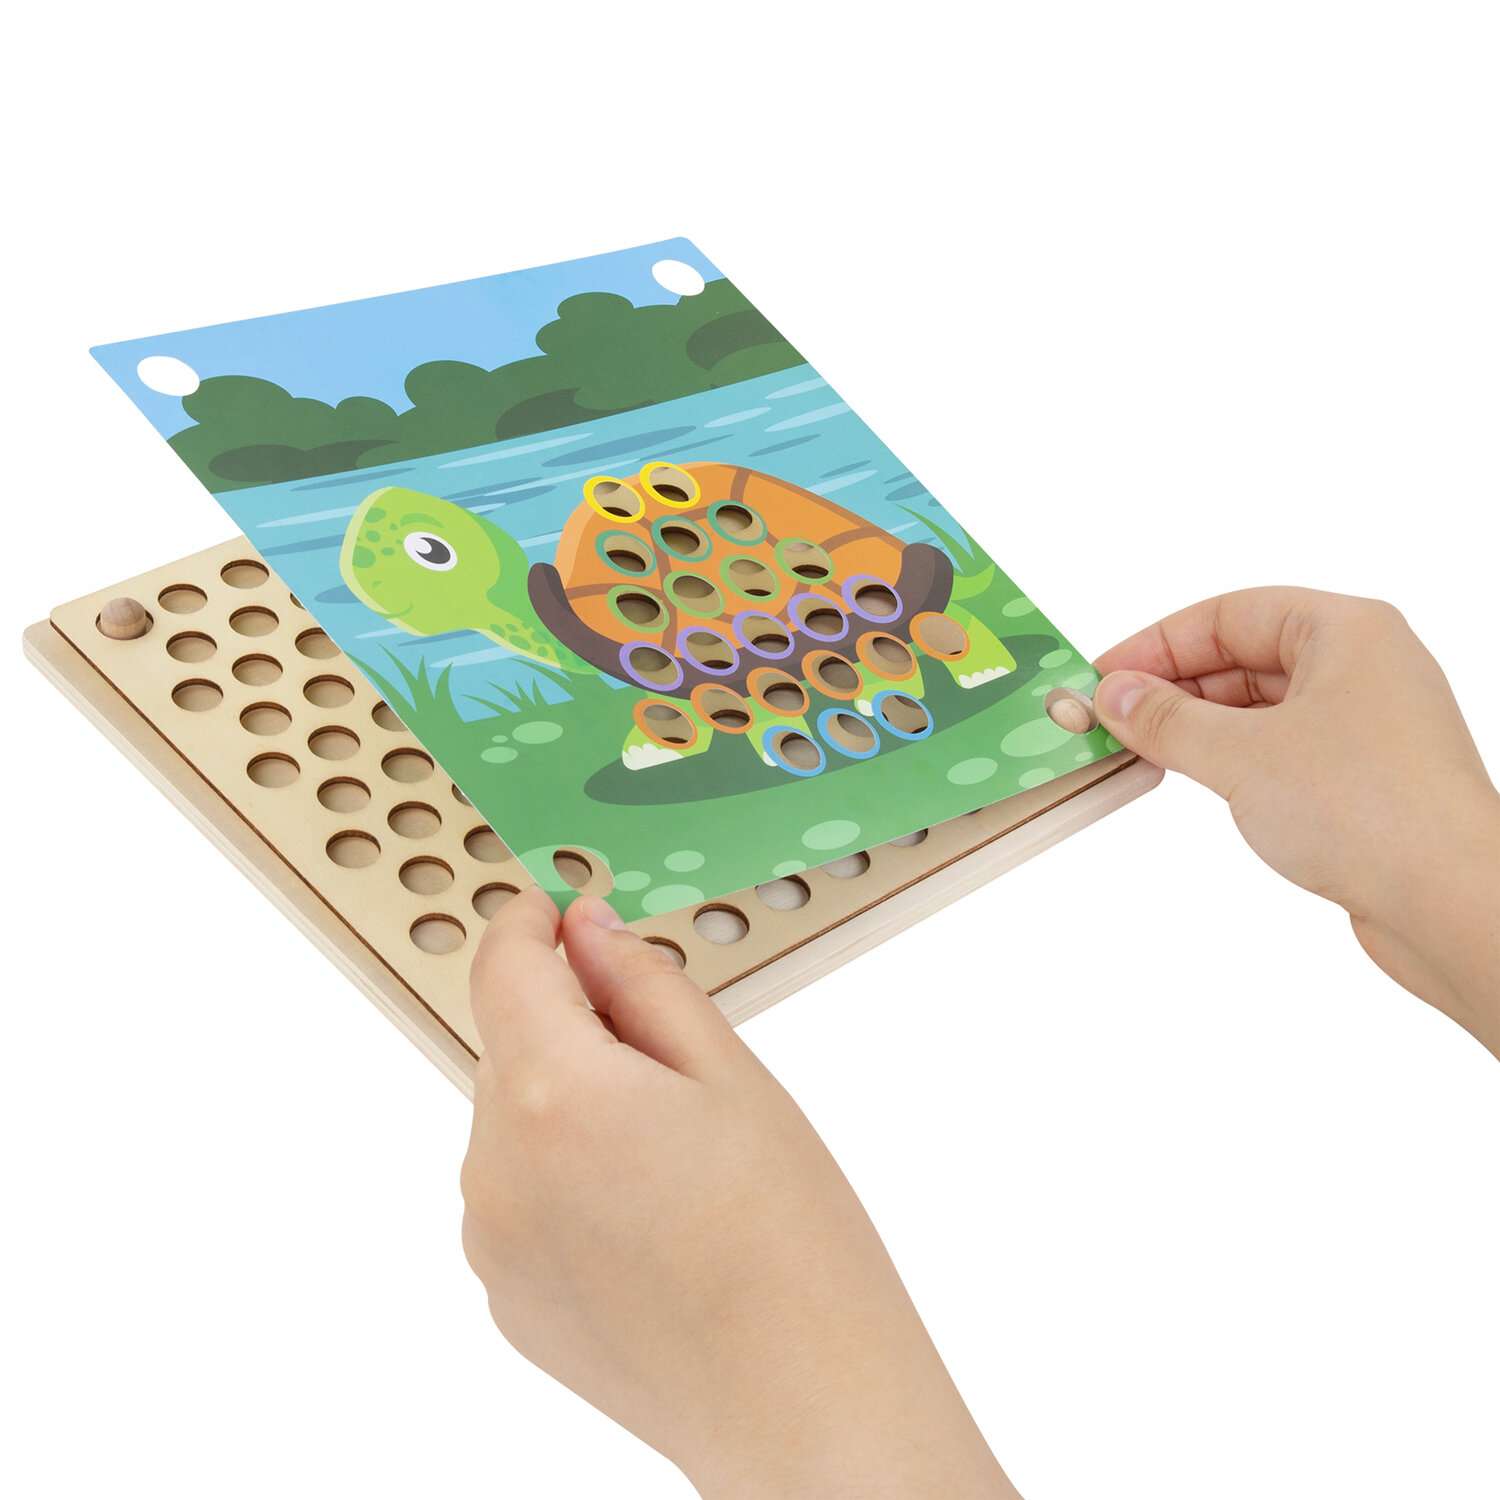 Сортер деревянный Brauberg для малышей мозаика Монтессори развивающие игрушки - фото 6